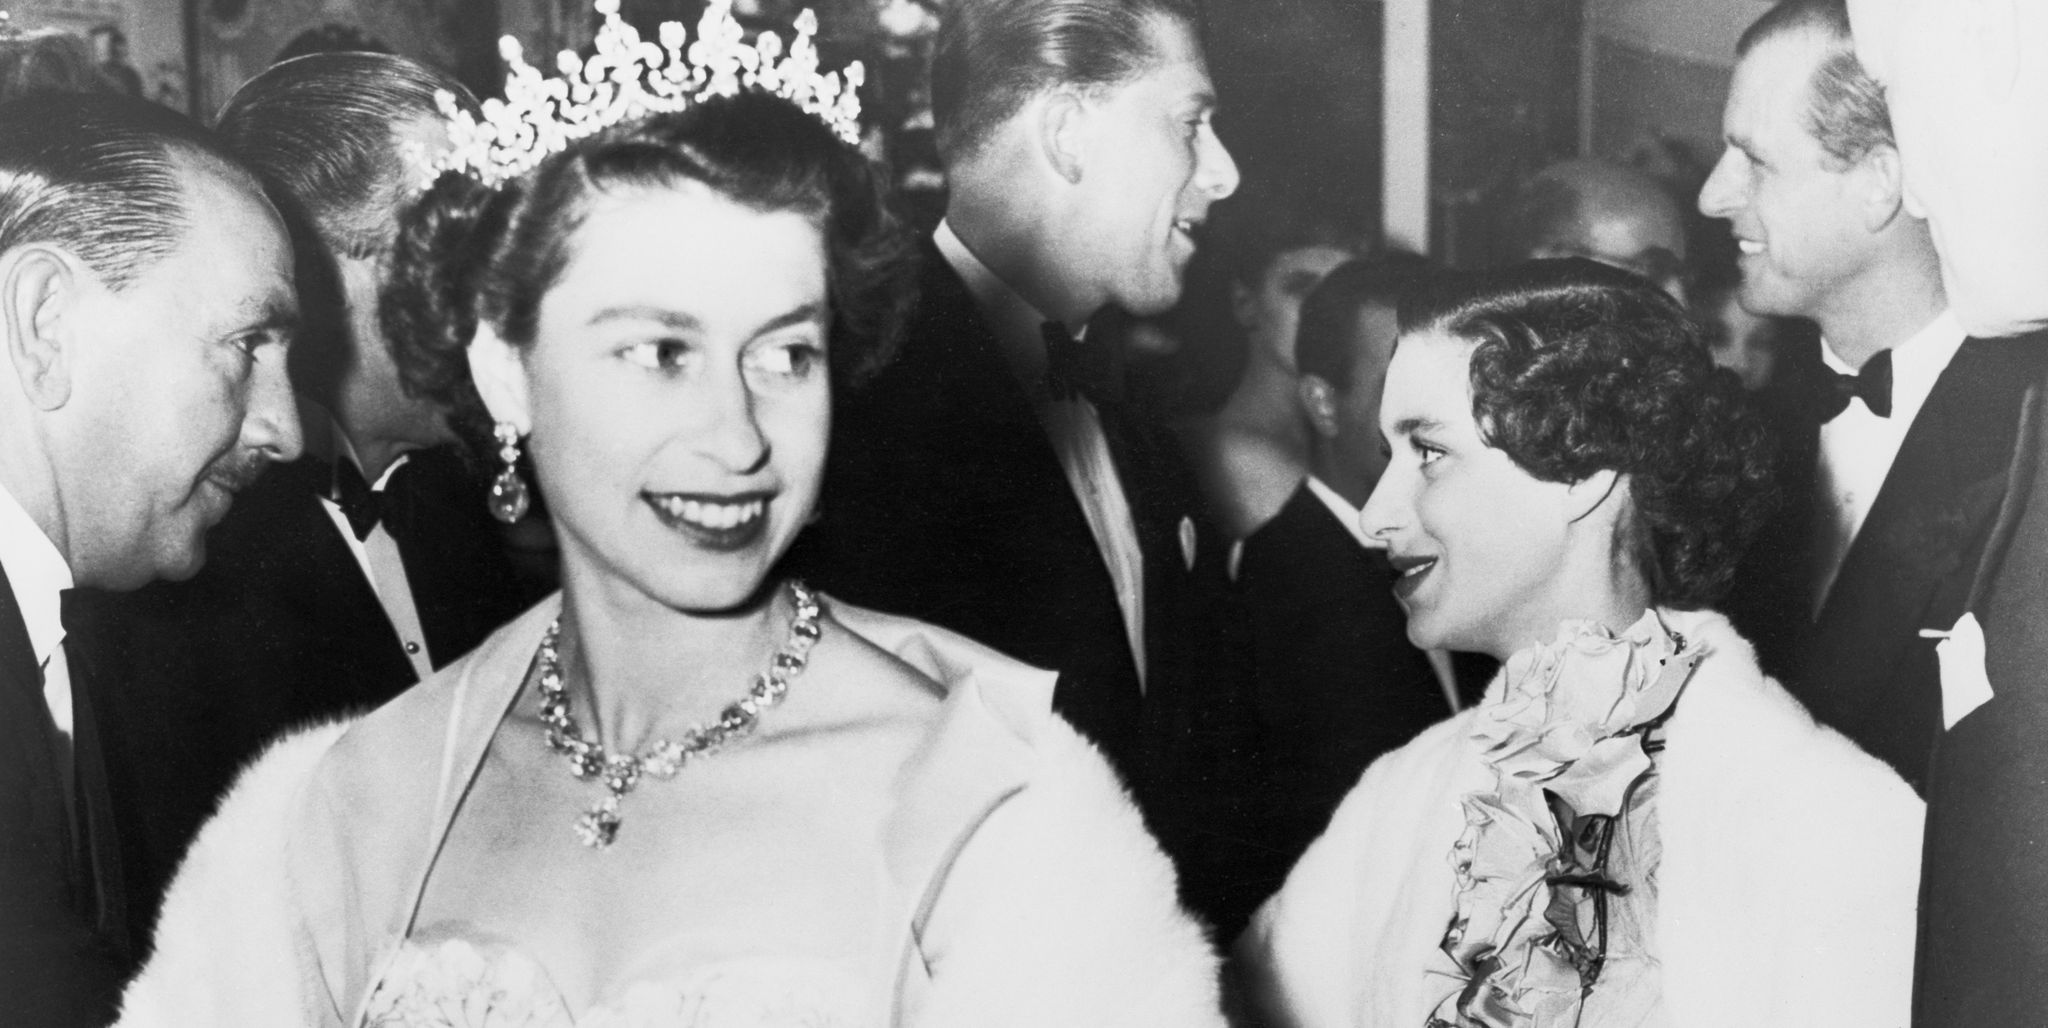 Regina Elisabetta II da giovane